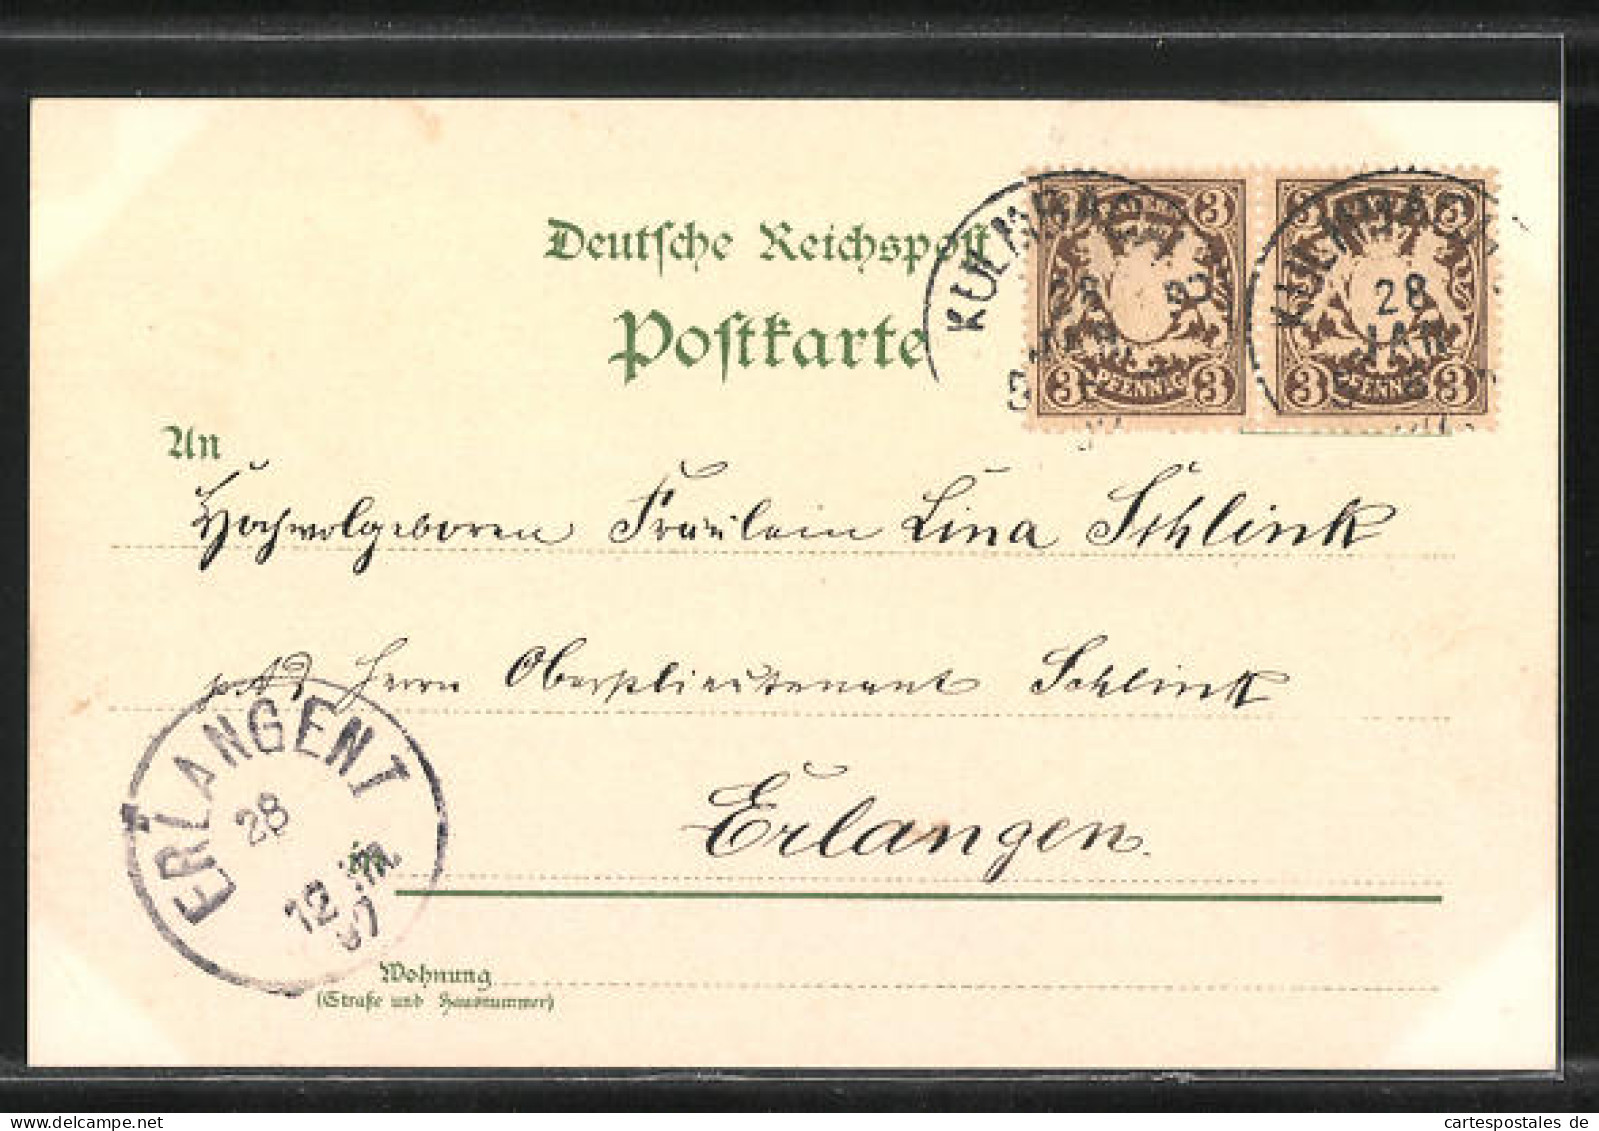 Lithographie Leipzig, Sächsisch-Thüringische Industrie-u. Gewerbe-Ausstellung 1897, Gartenbauhalle, Frauen In Tracht  - Exhibitions